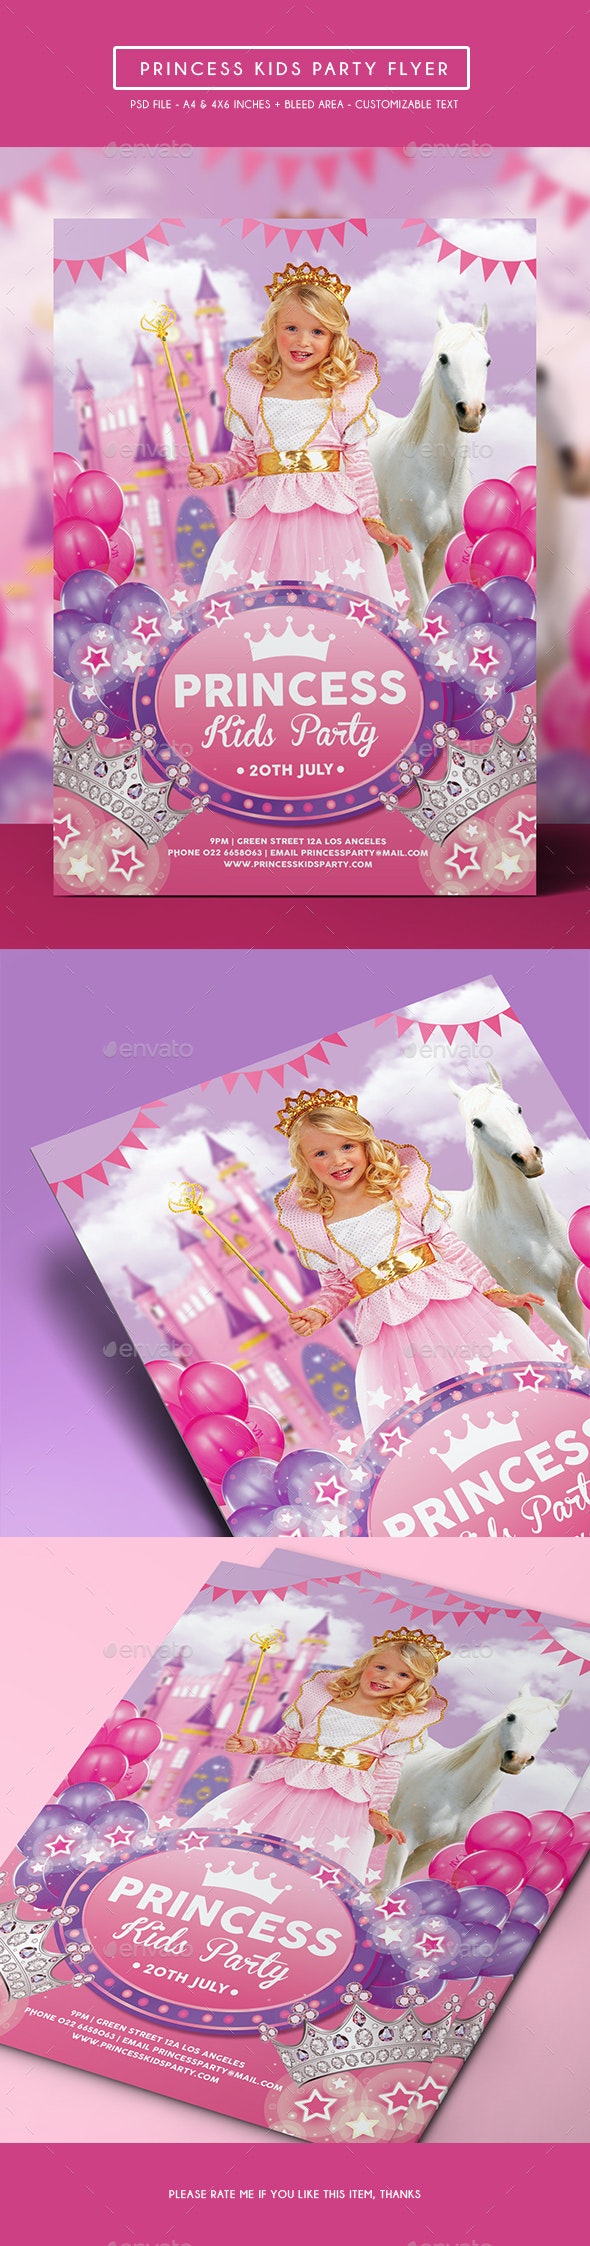 فایل لایه باز کارت دعوت جشن تولد Princess